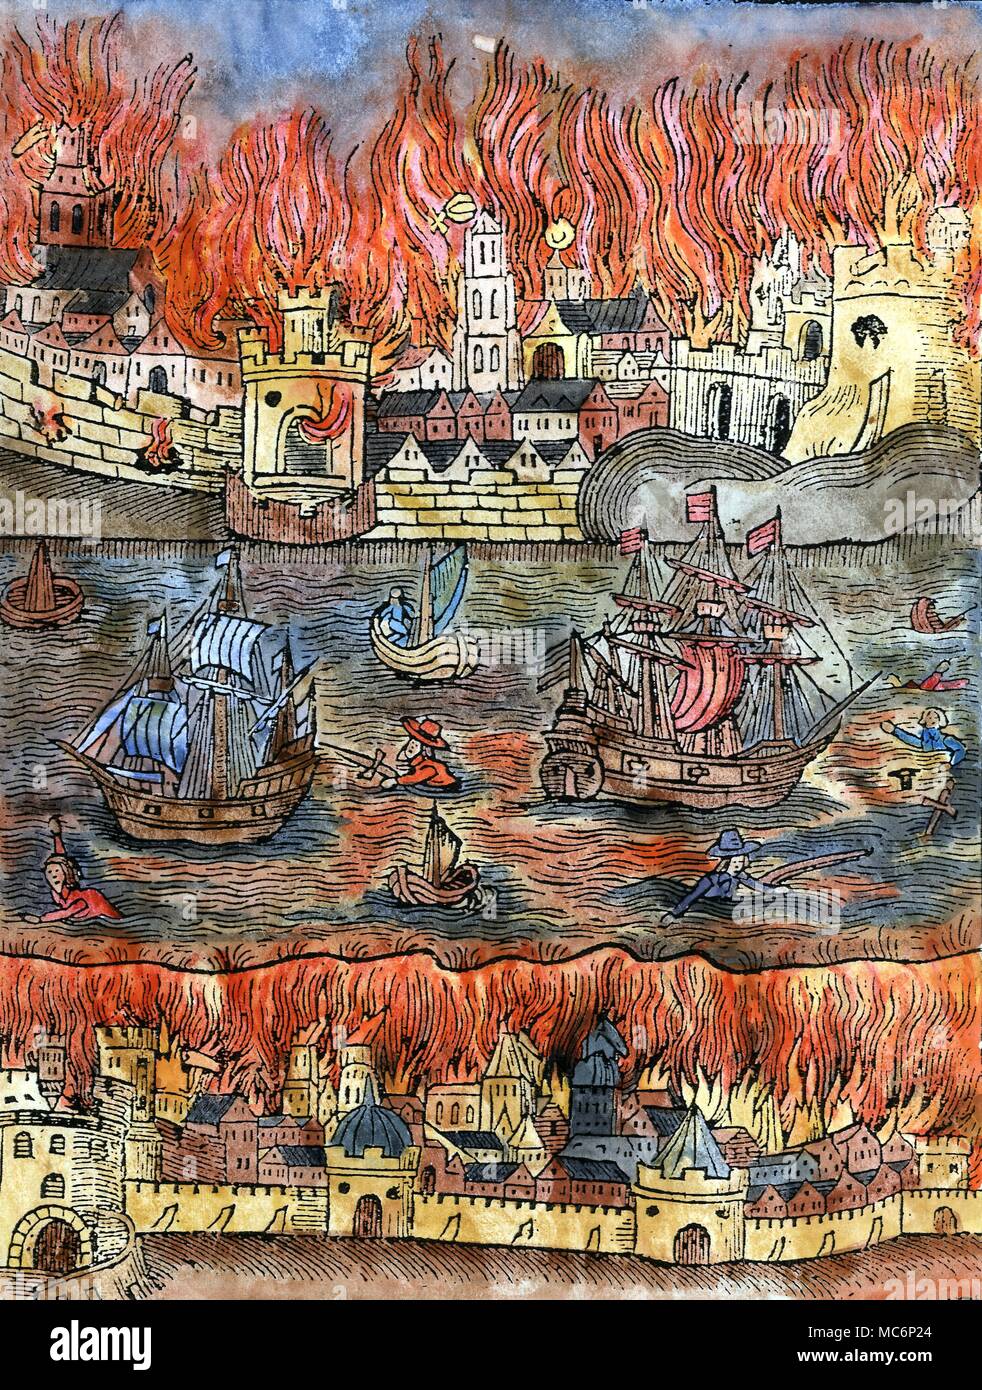 Profezia - Grande Incendio di Londra un geroglifico, pubblicato dall'astrologo William Lilly, come una profezia nascosta del grande incendio che ha colpito Londra nel 1666. Da William Lilly, monarchia o no la monarchia in Inghilterra (1651) Foto Stock